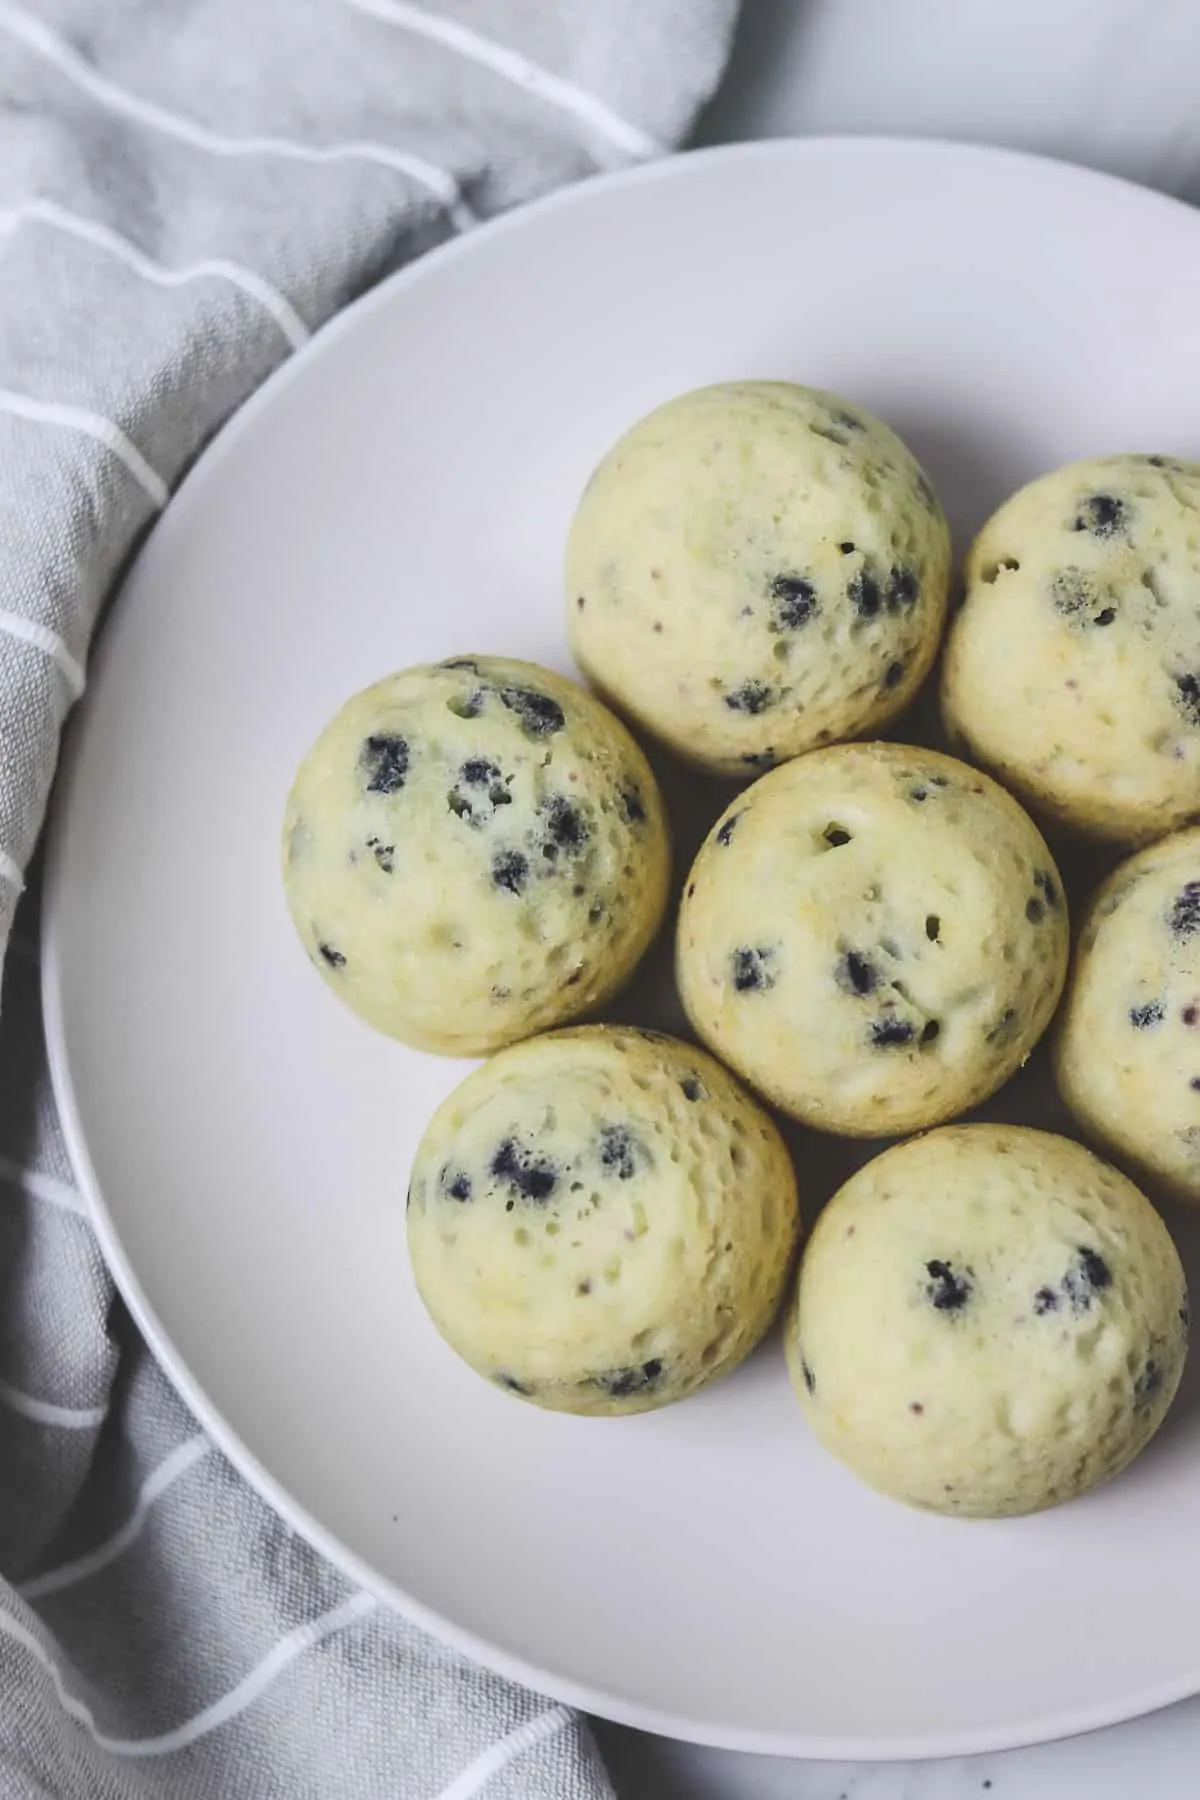 Egg-Based Snack Appliances : Muffin Maker